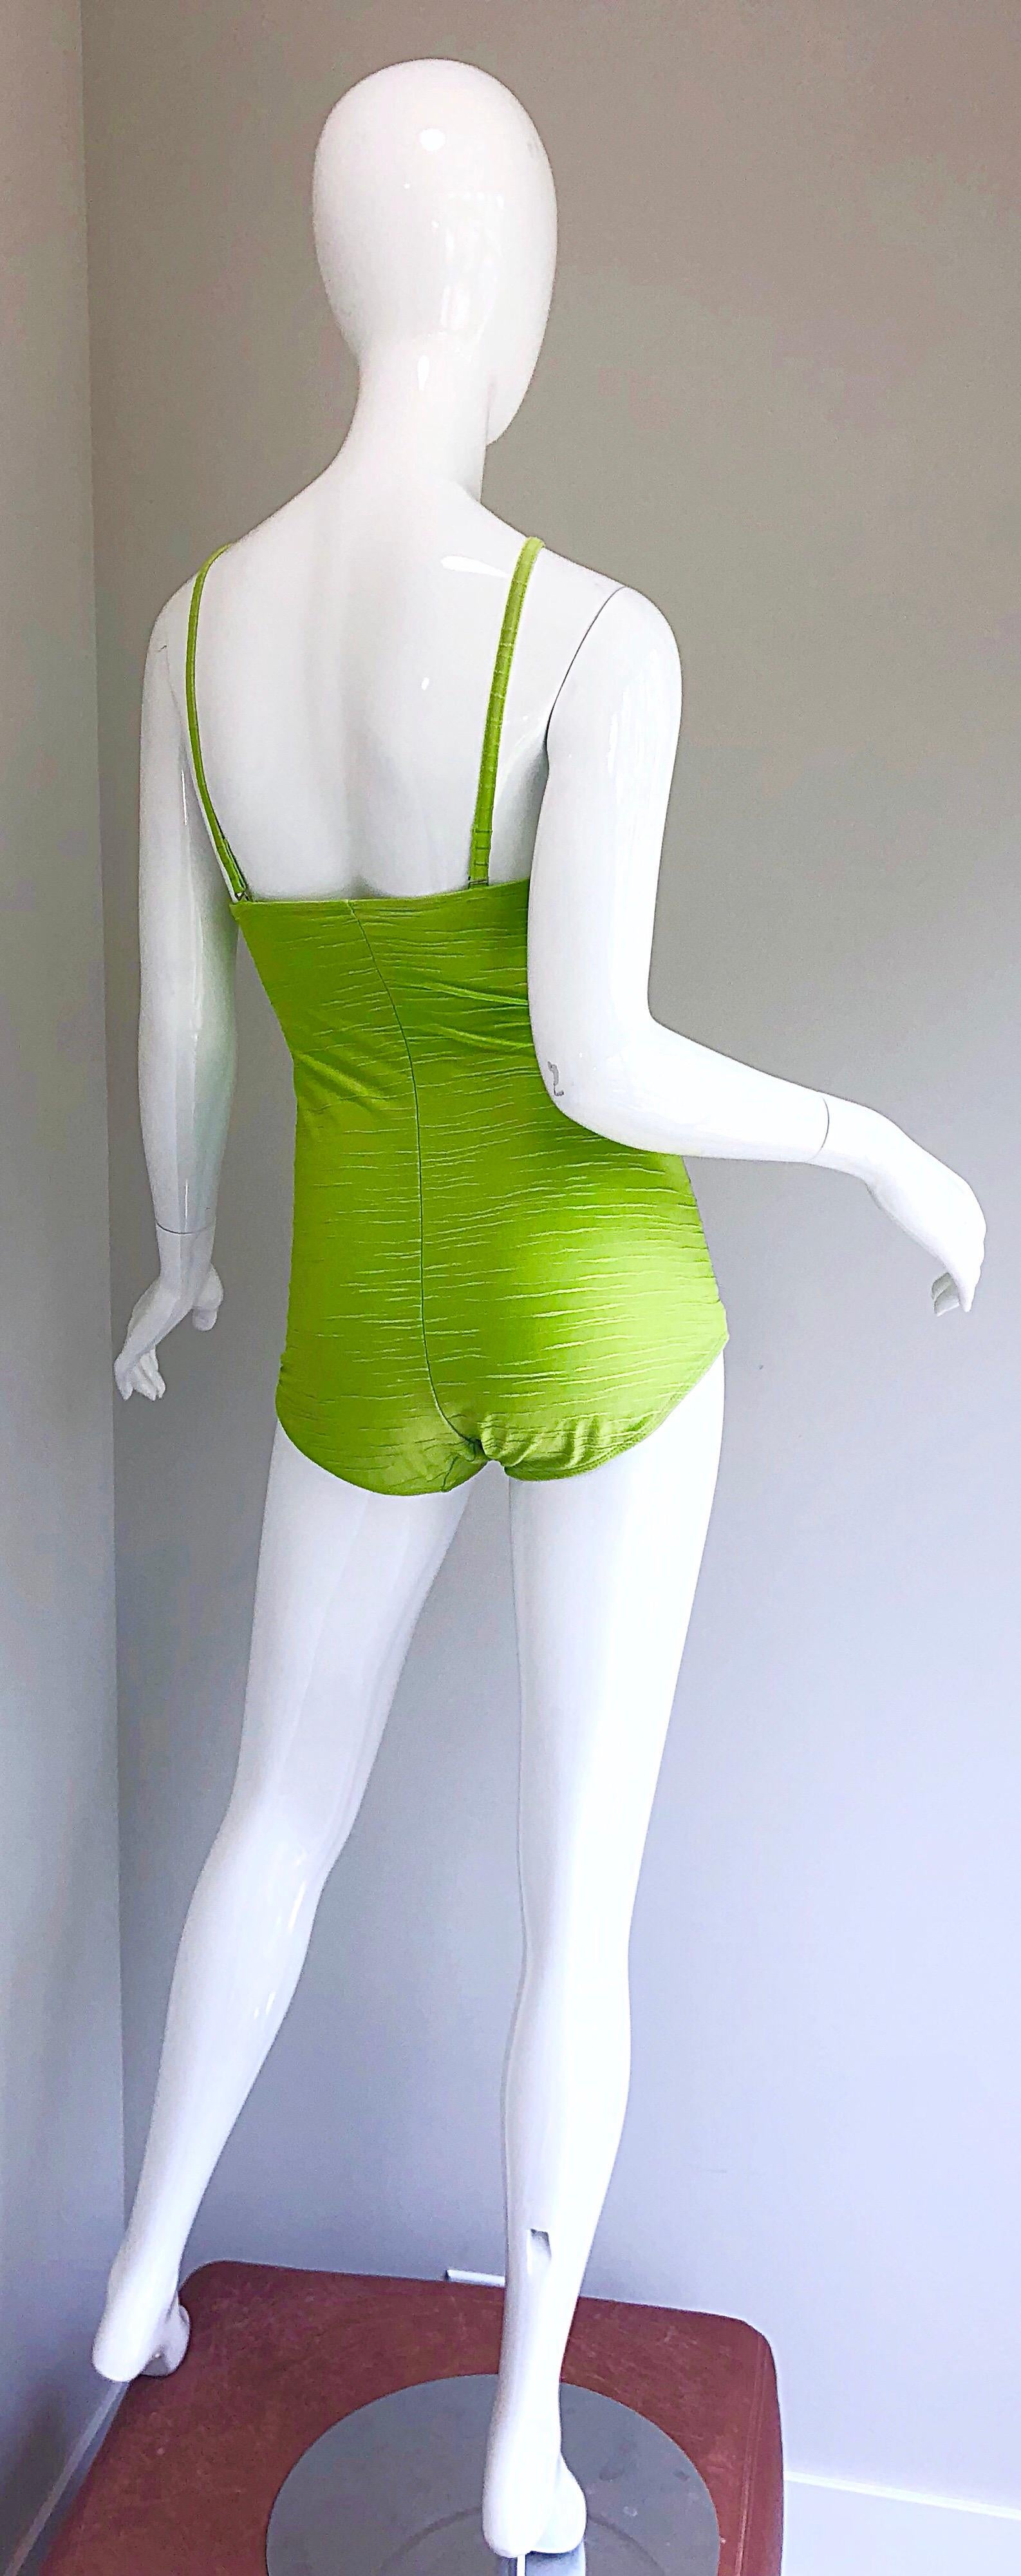 Women's Size 14 Oscar de la Renta Neon Lime Green One Piece 60s Style Swimsuit Bodysuit For Sale